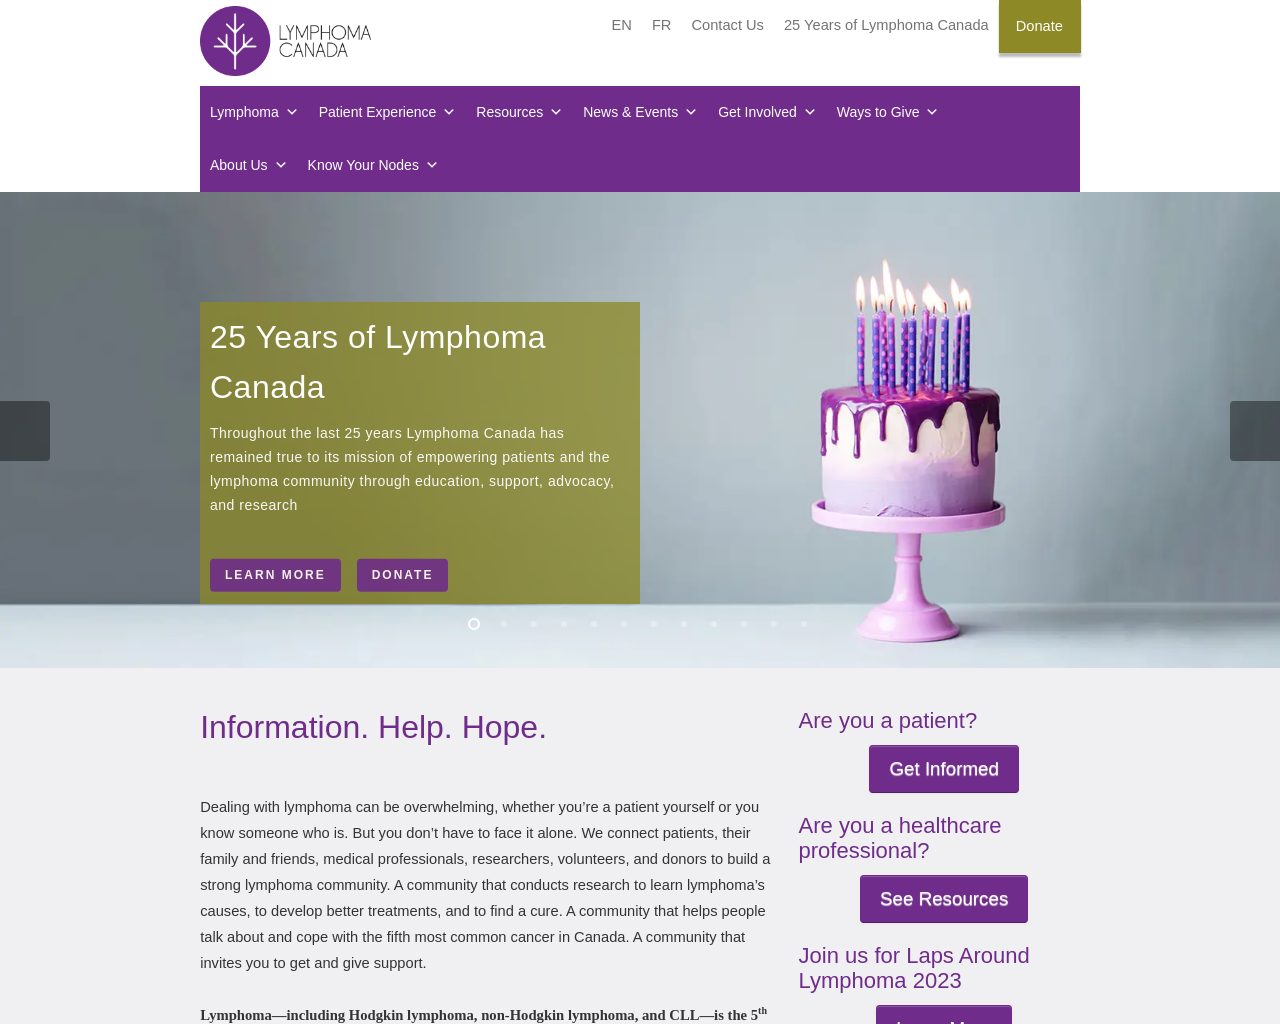 www.lymphoma.ca